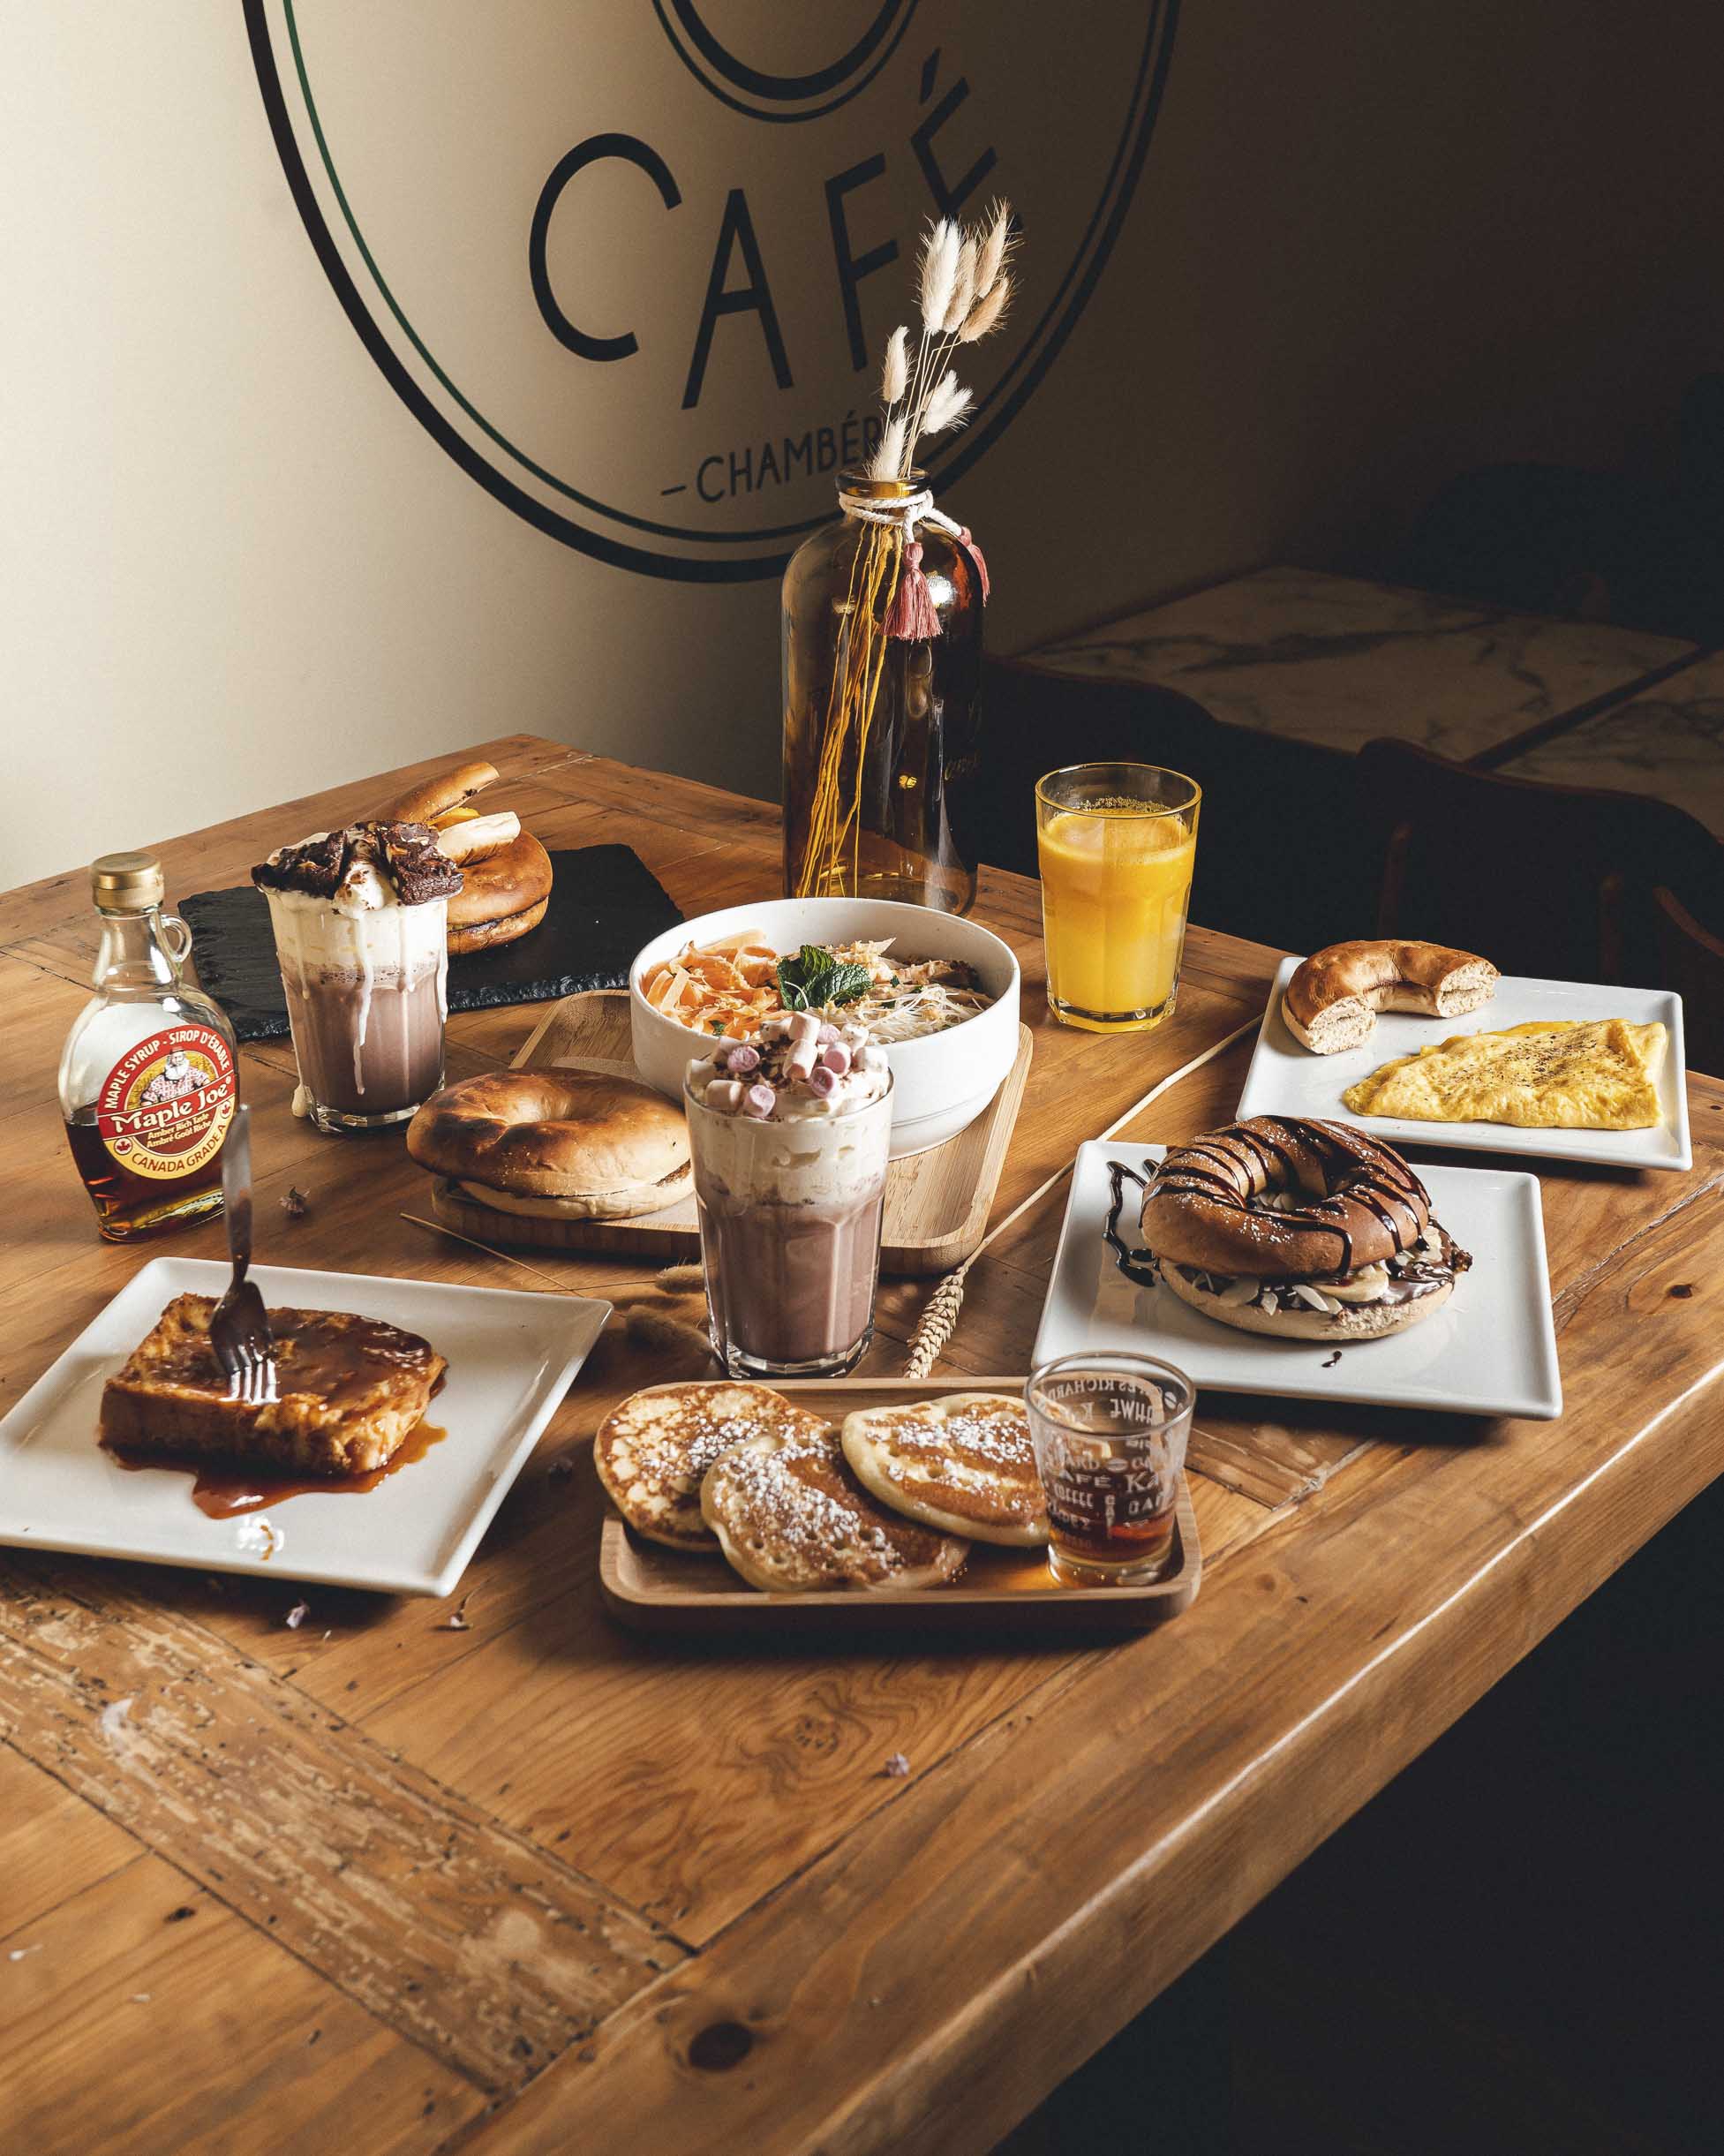 Un brunch : pancakes, bagels, pain perdu, omelette, chocolat et jus d'orange sur une table en bois. Shooting photo promotionnel pour Green Bagel Café à Chambéry.